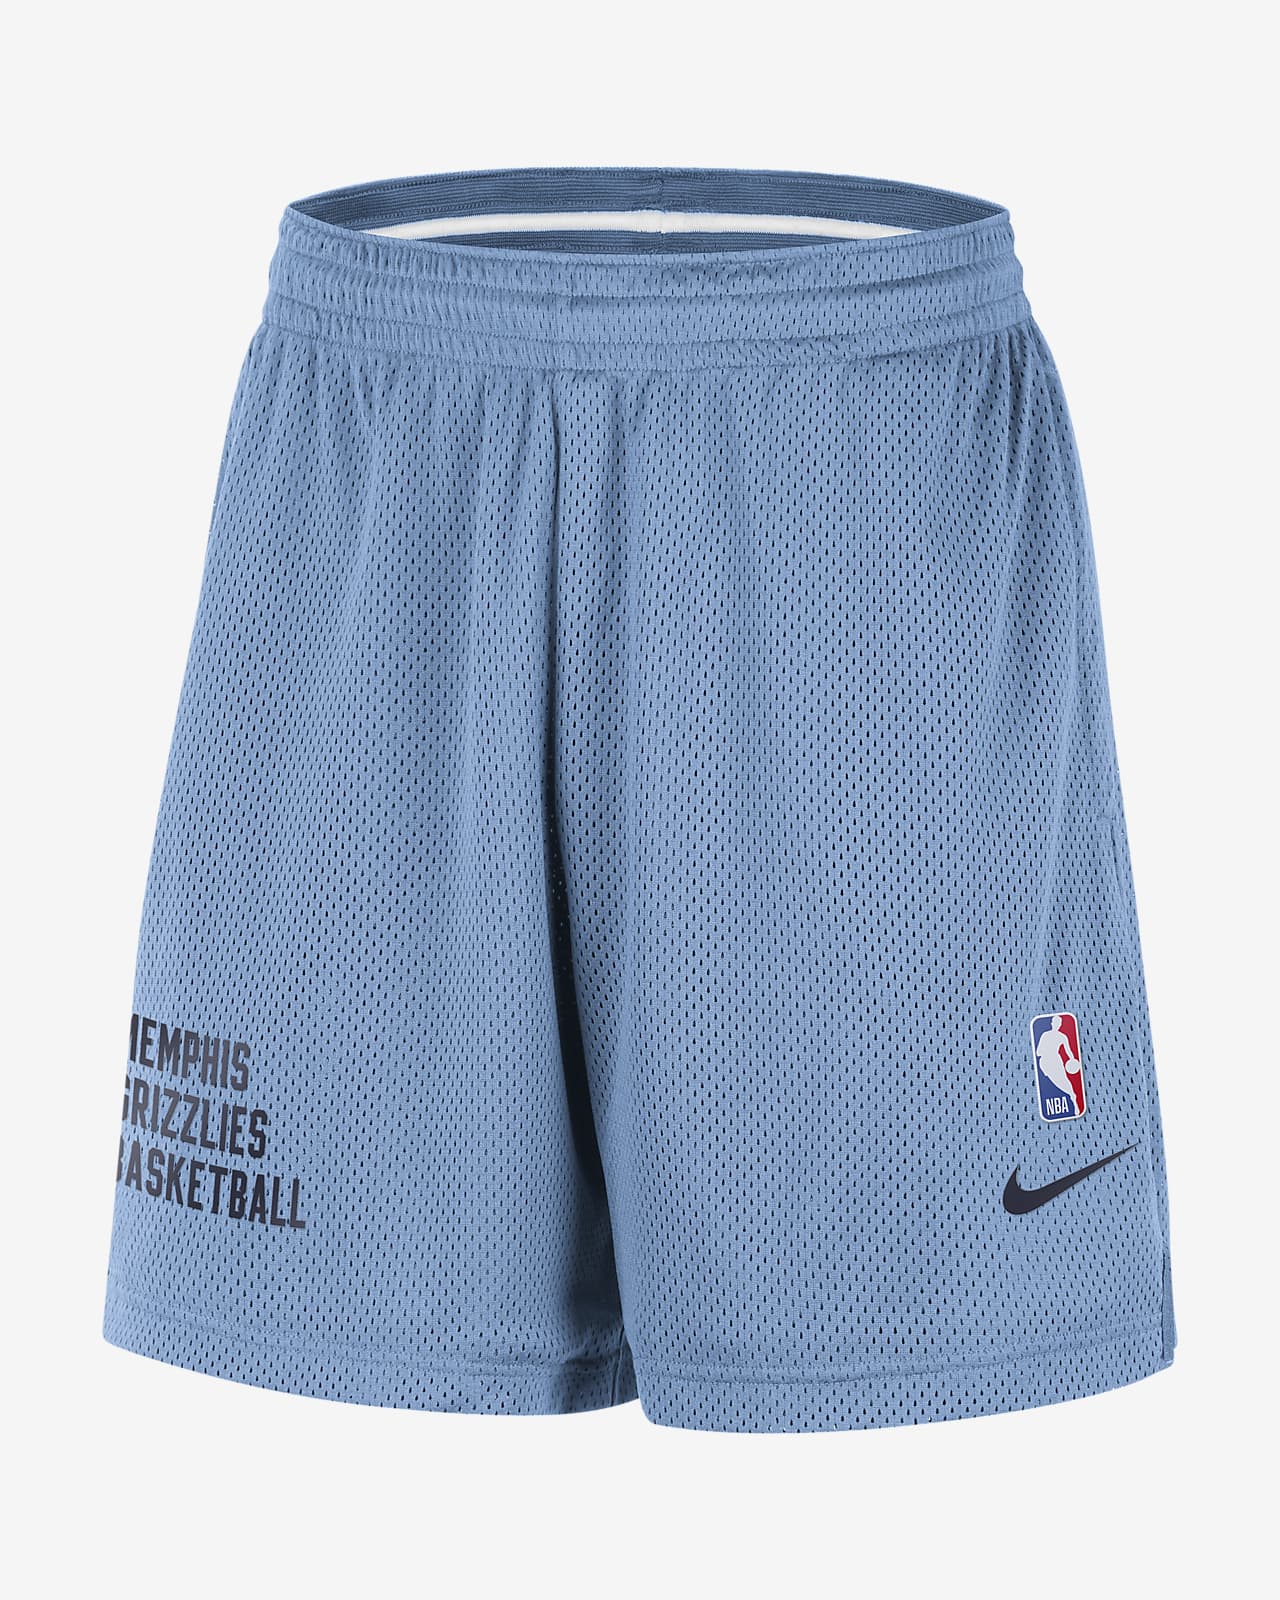 Shorts de malla Nike de la NBA para hombre Memphis Grizzlies